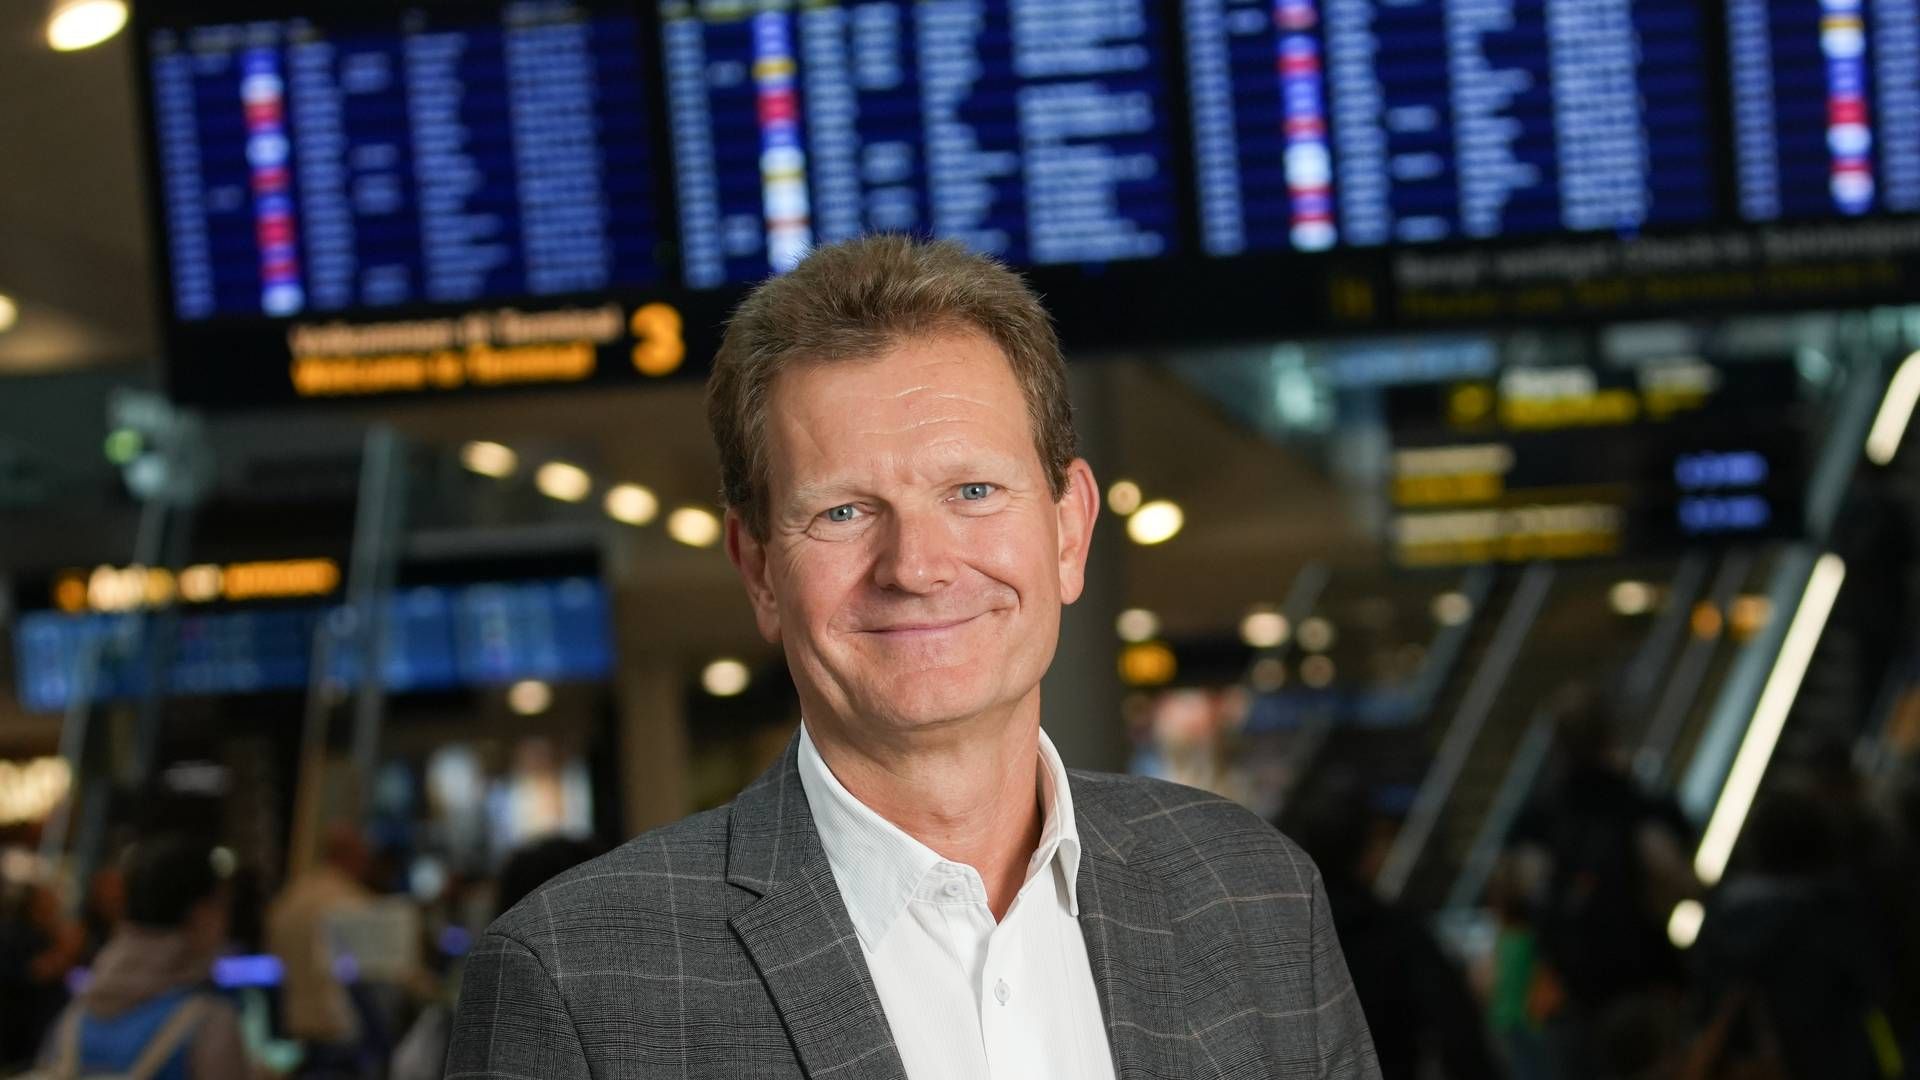 Christian Poulsen er udpeget til ny adm. direktør. | Foto: Pr / Københavns Lufthavne